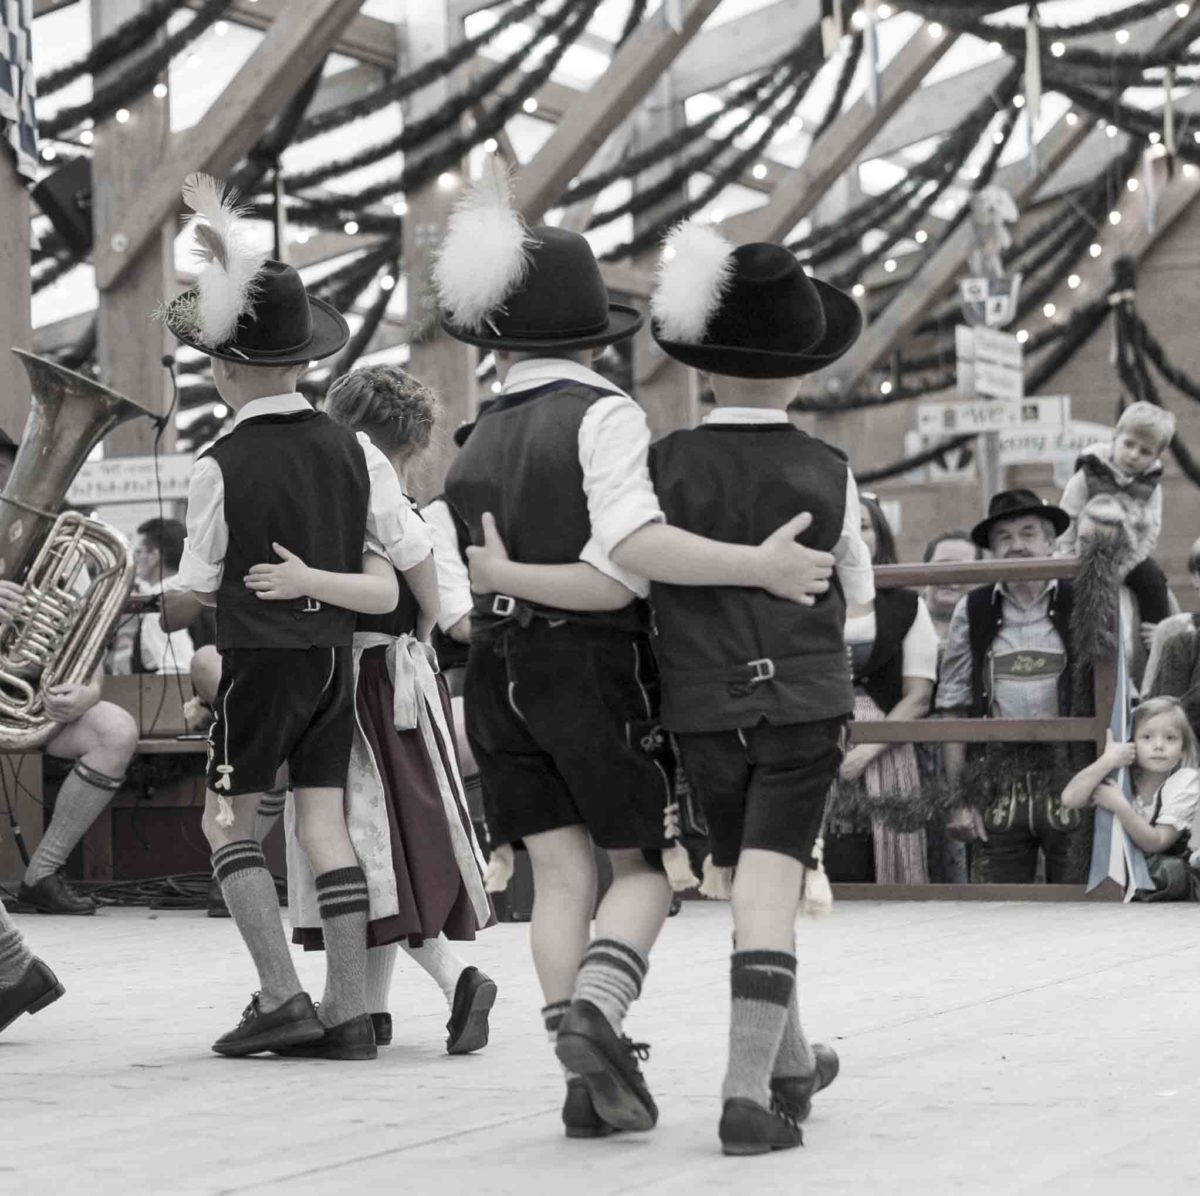 historisches Oktoberfest Oide Wiesn auf dem Oktoberfest in München: Kinder tanzen in bayerischen Trachten / historic fairground Oide Wiesn in Munich: children dancing in traditional Bavarian dresses, 30.9.2019, Foto: Robert B. Fishman